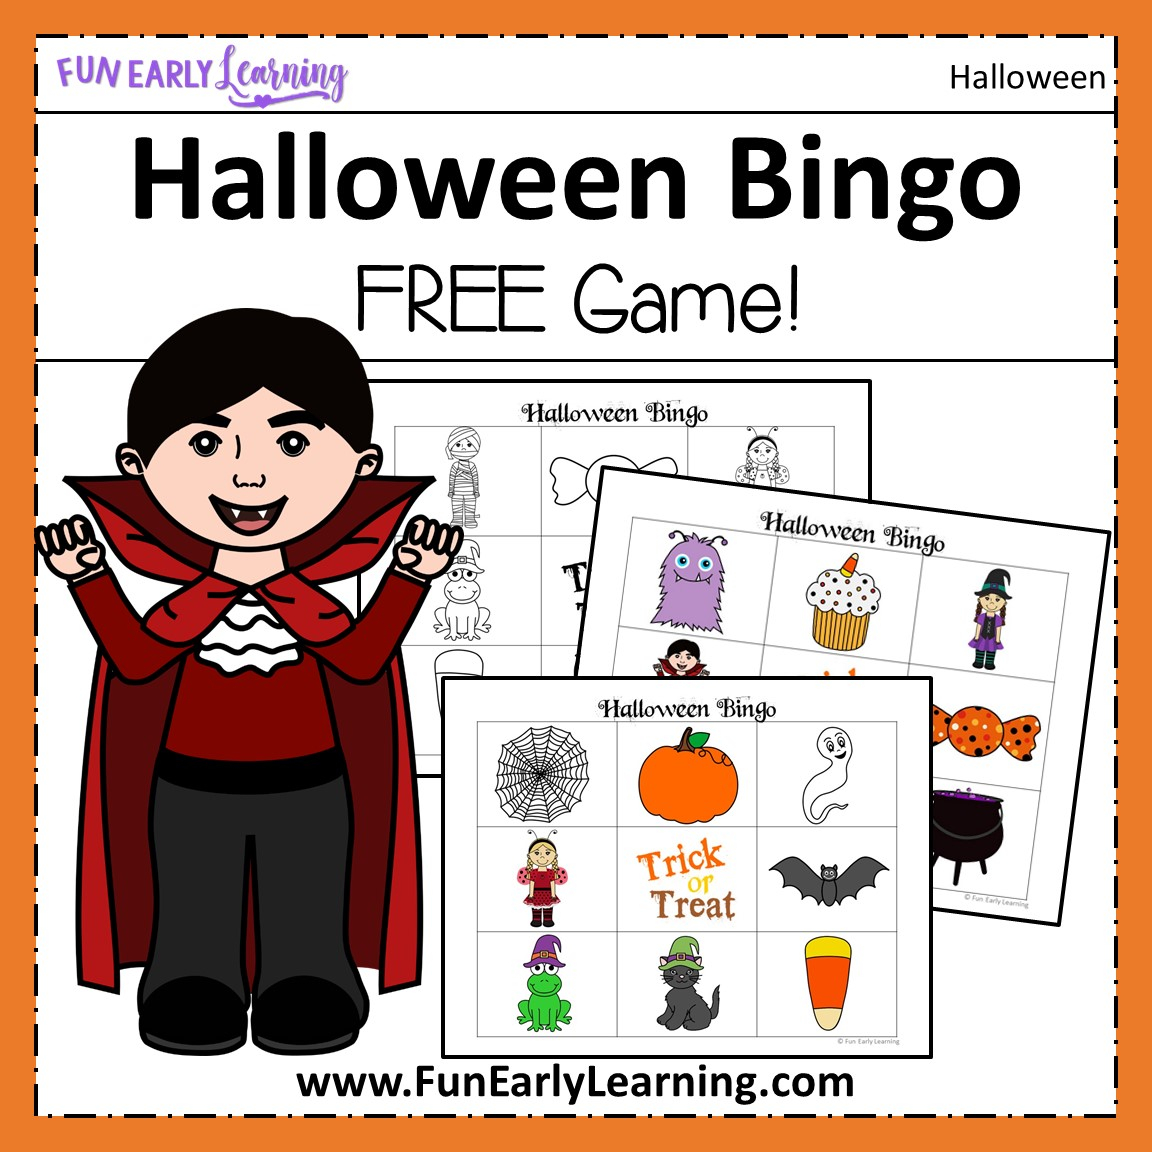 Halloween Bingo Free Printable For Preschool And Kindergarten